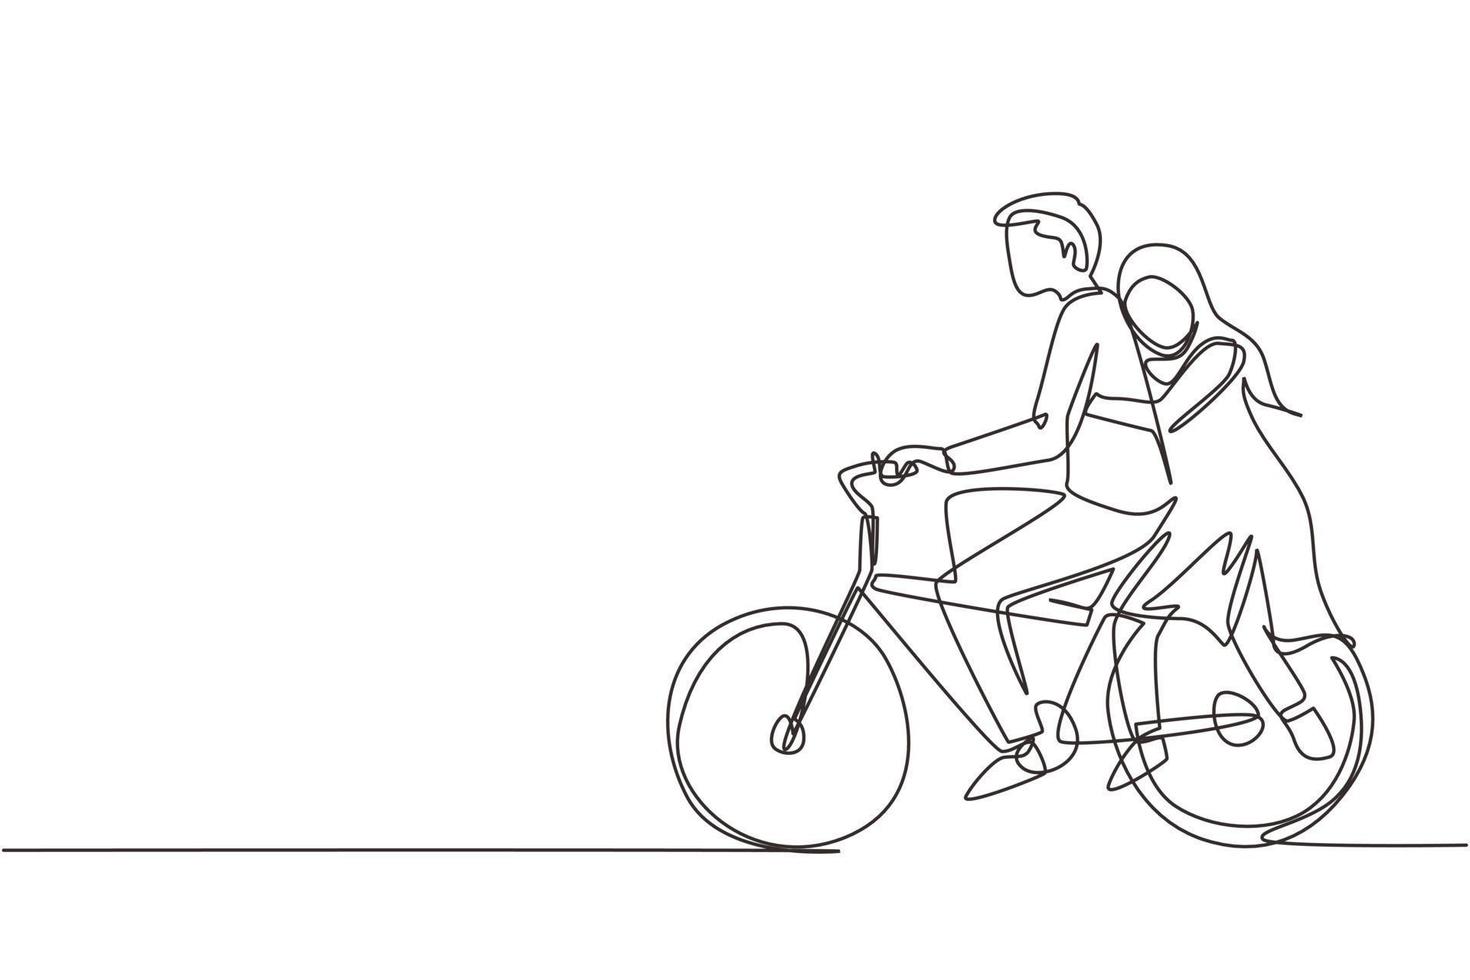 contínua uma linha de desenho romântico casal árabe andando de bicicleta juntos. conceito de família romântica feliz. intimidade comemora aniversário de casamento. ilustração gráfica de vetor de desenho de linha única